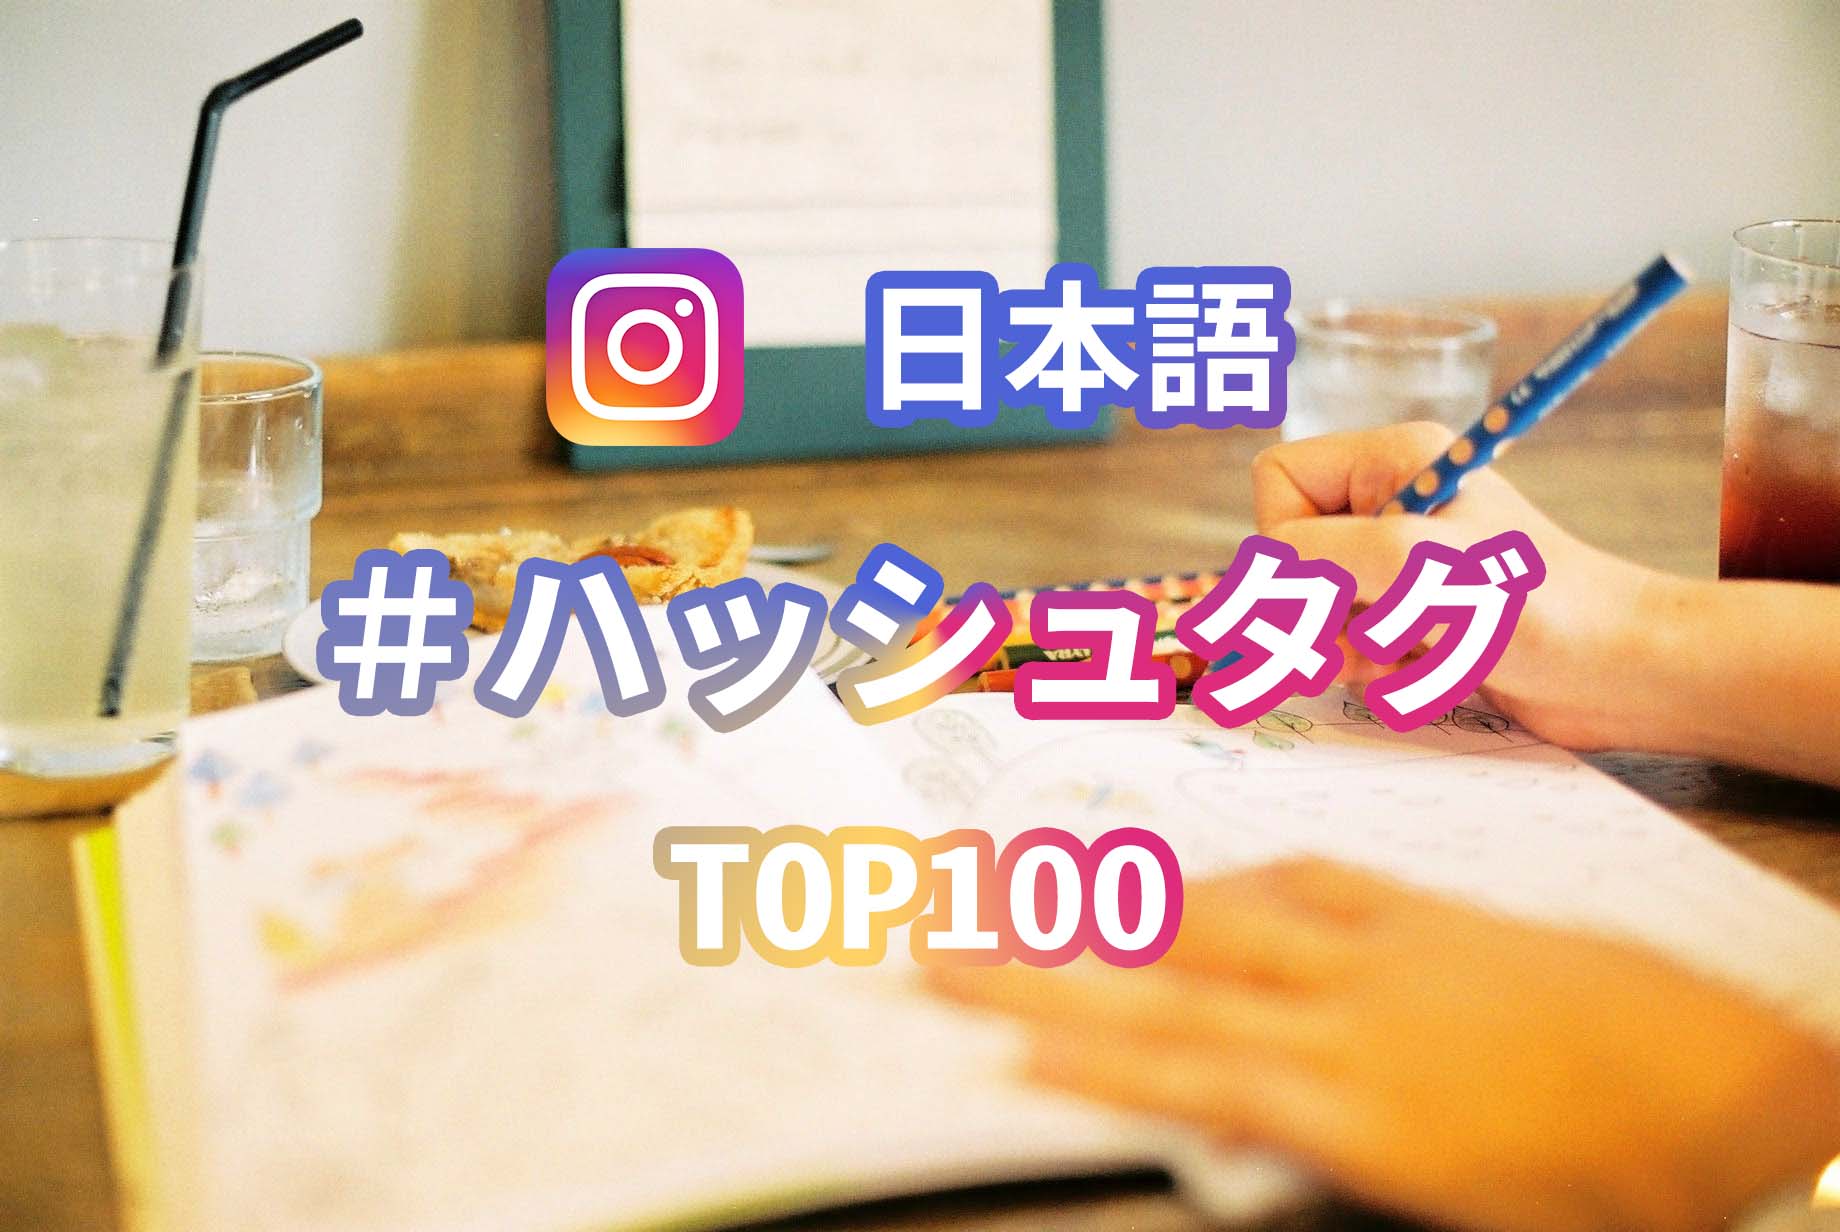 インスタで人気の日本語ハッシュタグ Top100 を調べてみた 19年版